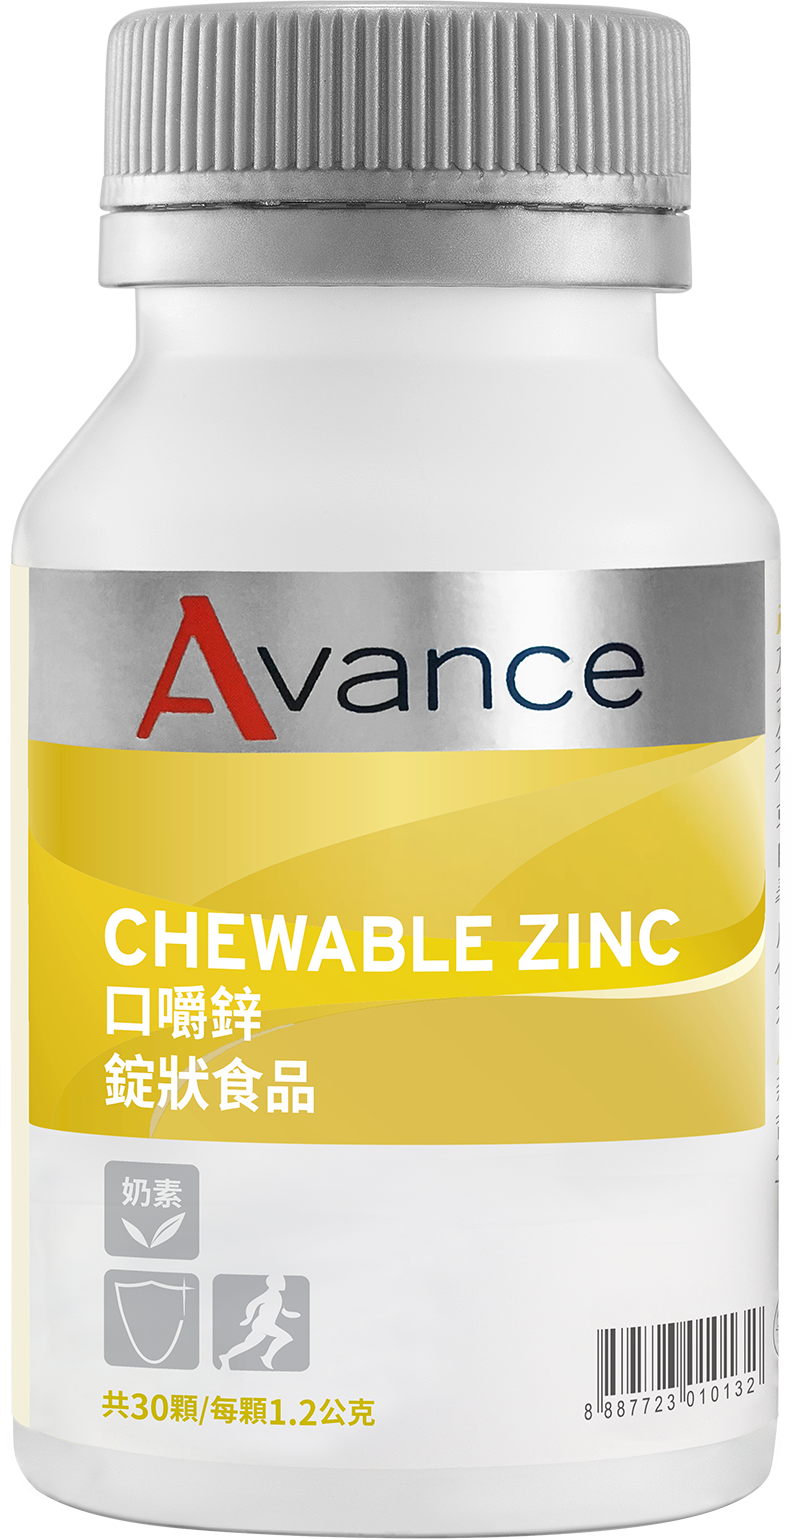 Chewable Zinc